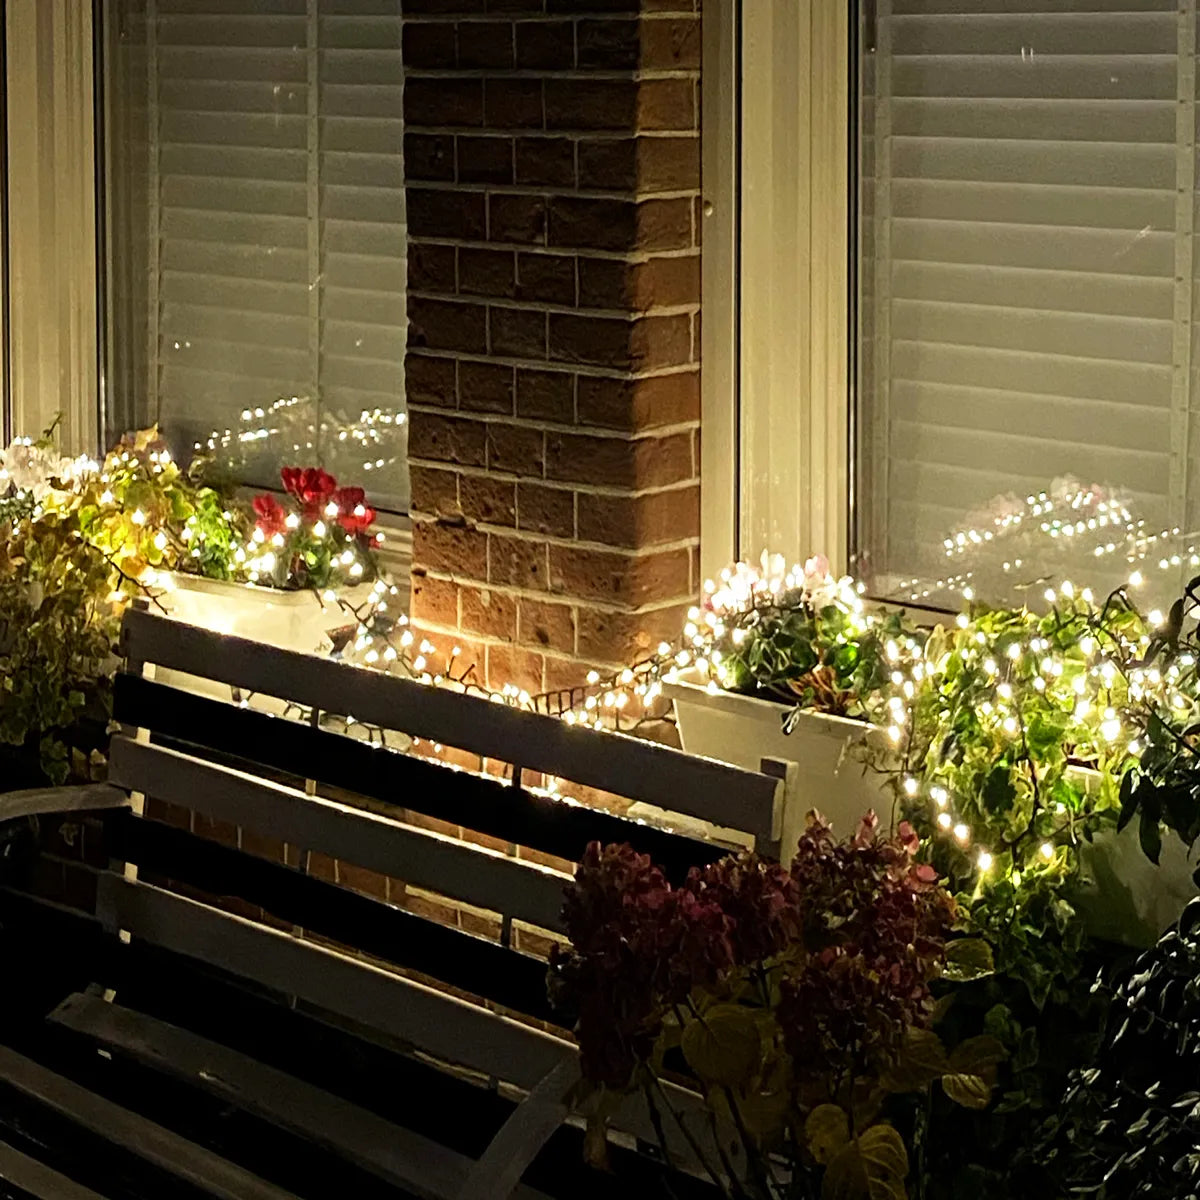 Éclairage de Noël LED Guirlande lumineuse 30 mètres 3,6 watts pour l'intérieur et l'extérieur